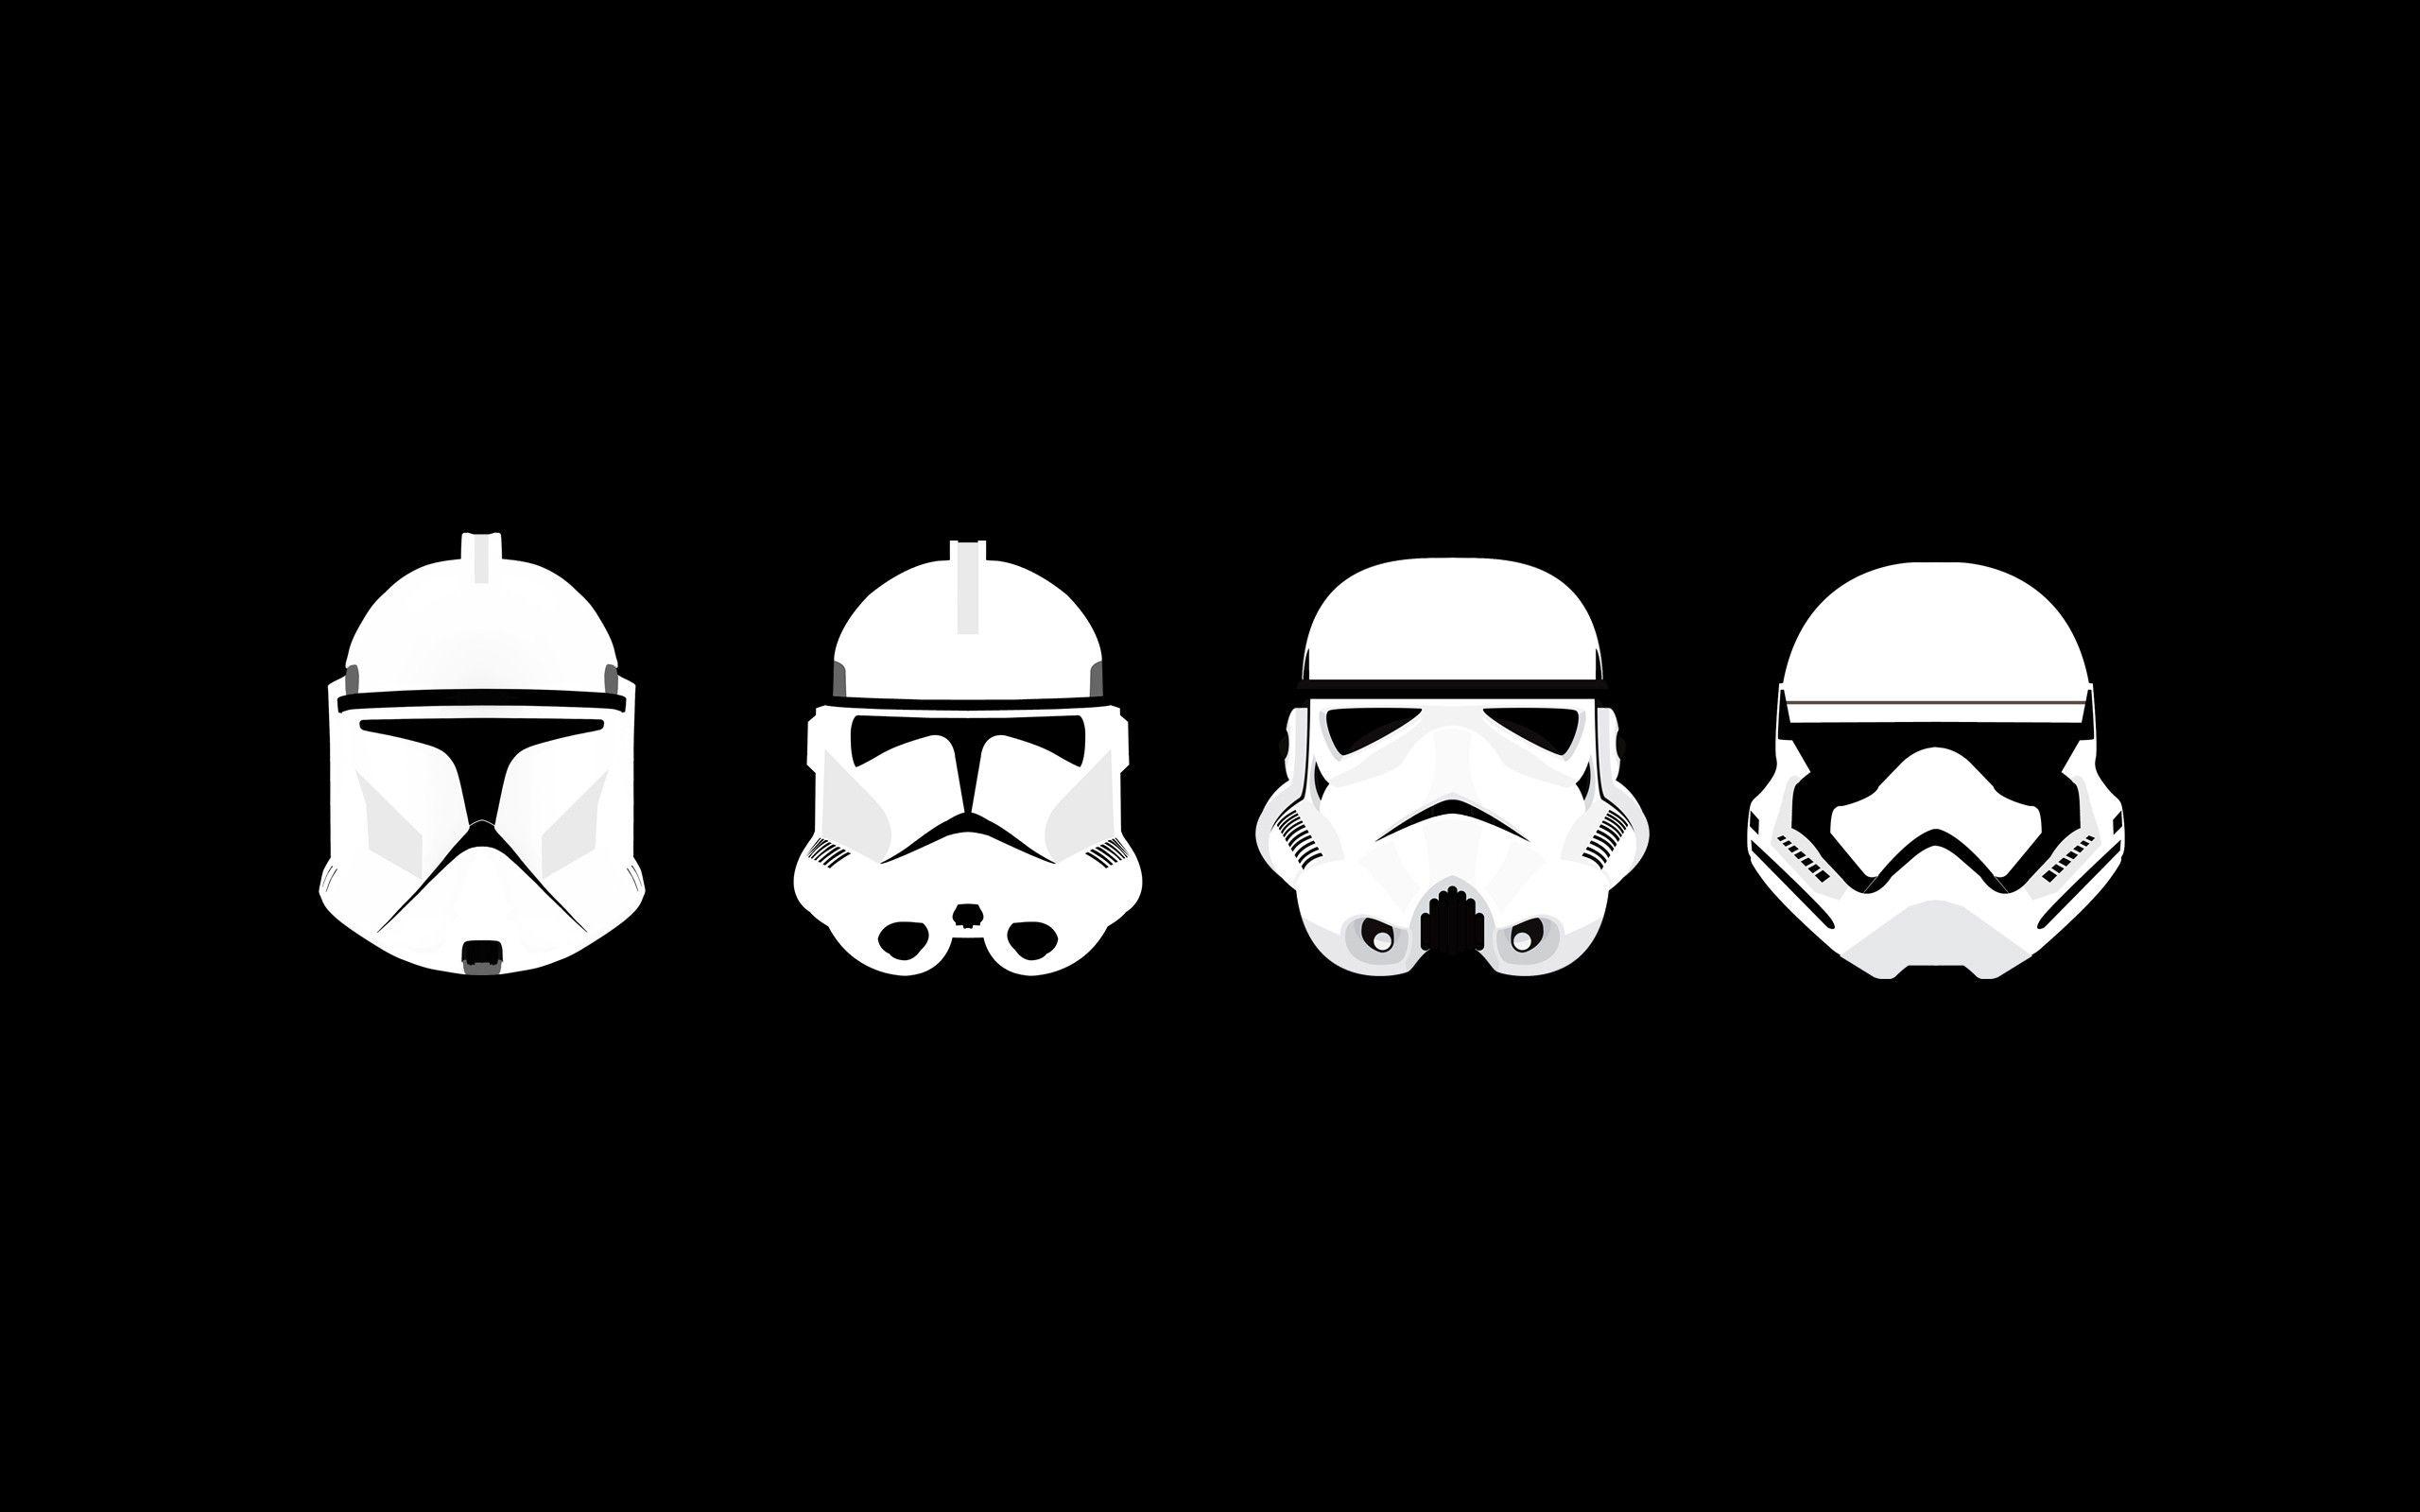 Stormtrooper Logo - Wallpaper : illustration, Star Wars, minimalism, text, logo, helmet